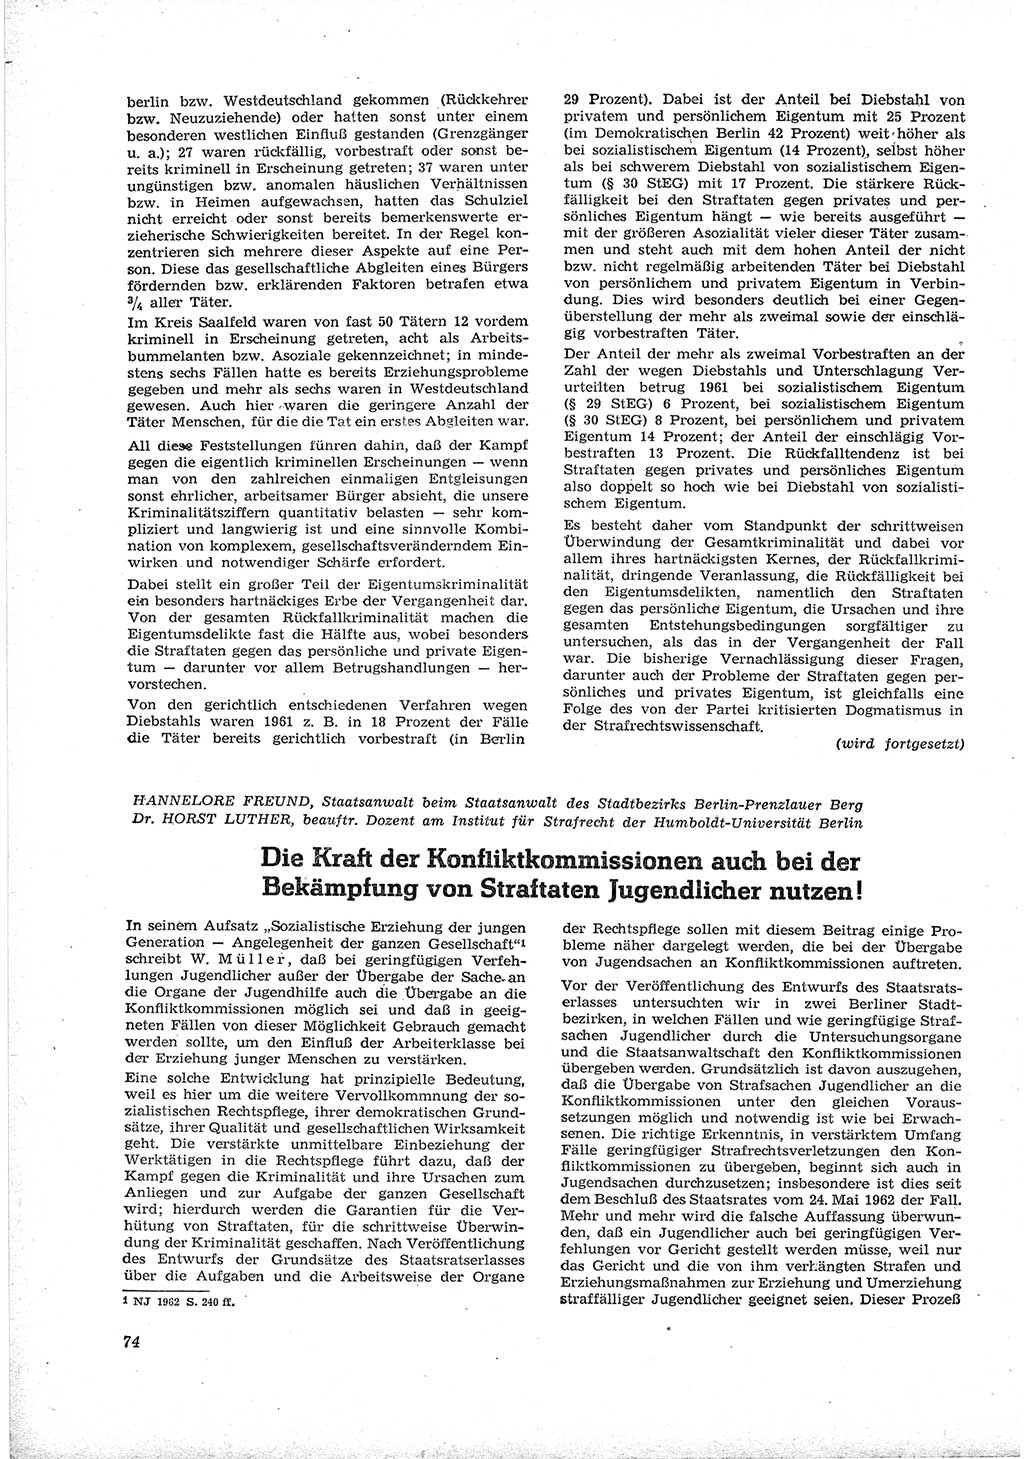 Neue Justiz (NJ), Zeitschrift für Recht und Rechtswissenschaft [Deutsche Demokratische Republik (DDR)], 17. Jahrgang 1963, Seite 74 (NJ DDR 1963, S. 74)